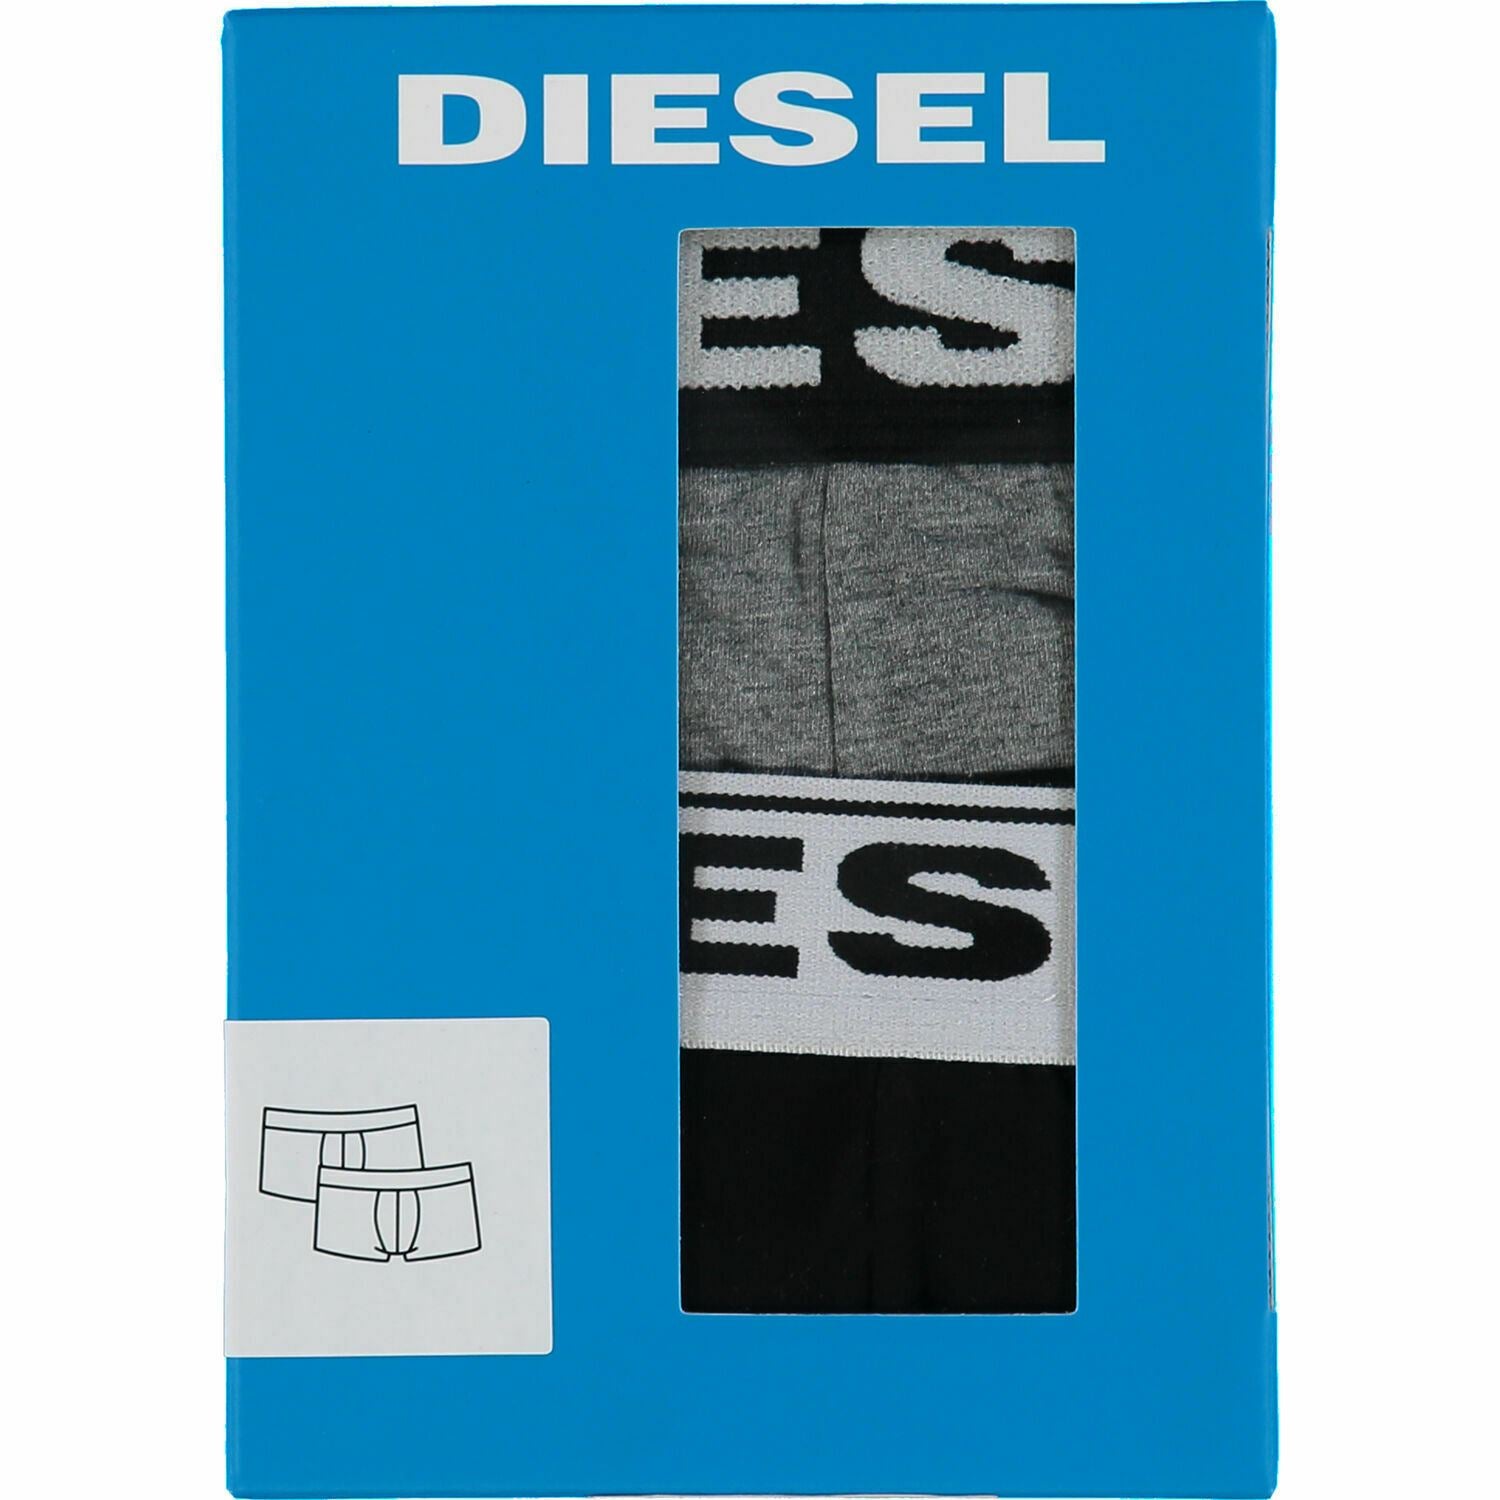 DIESEL Underwear: Men's 2-Pack Stretch Cotton Boxer Trunks, Black/Grey, size L